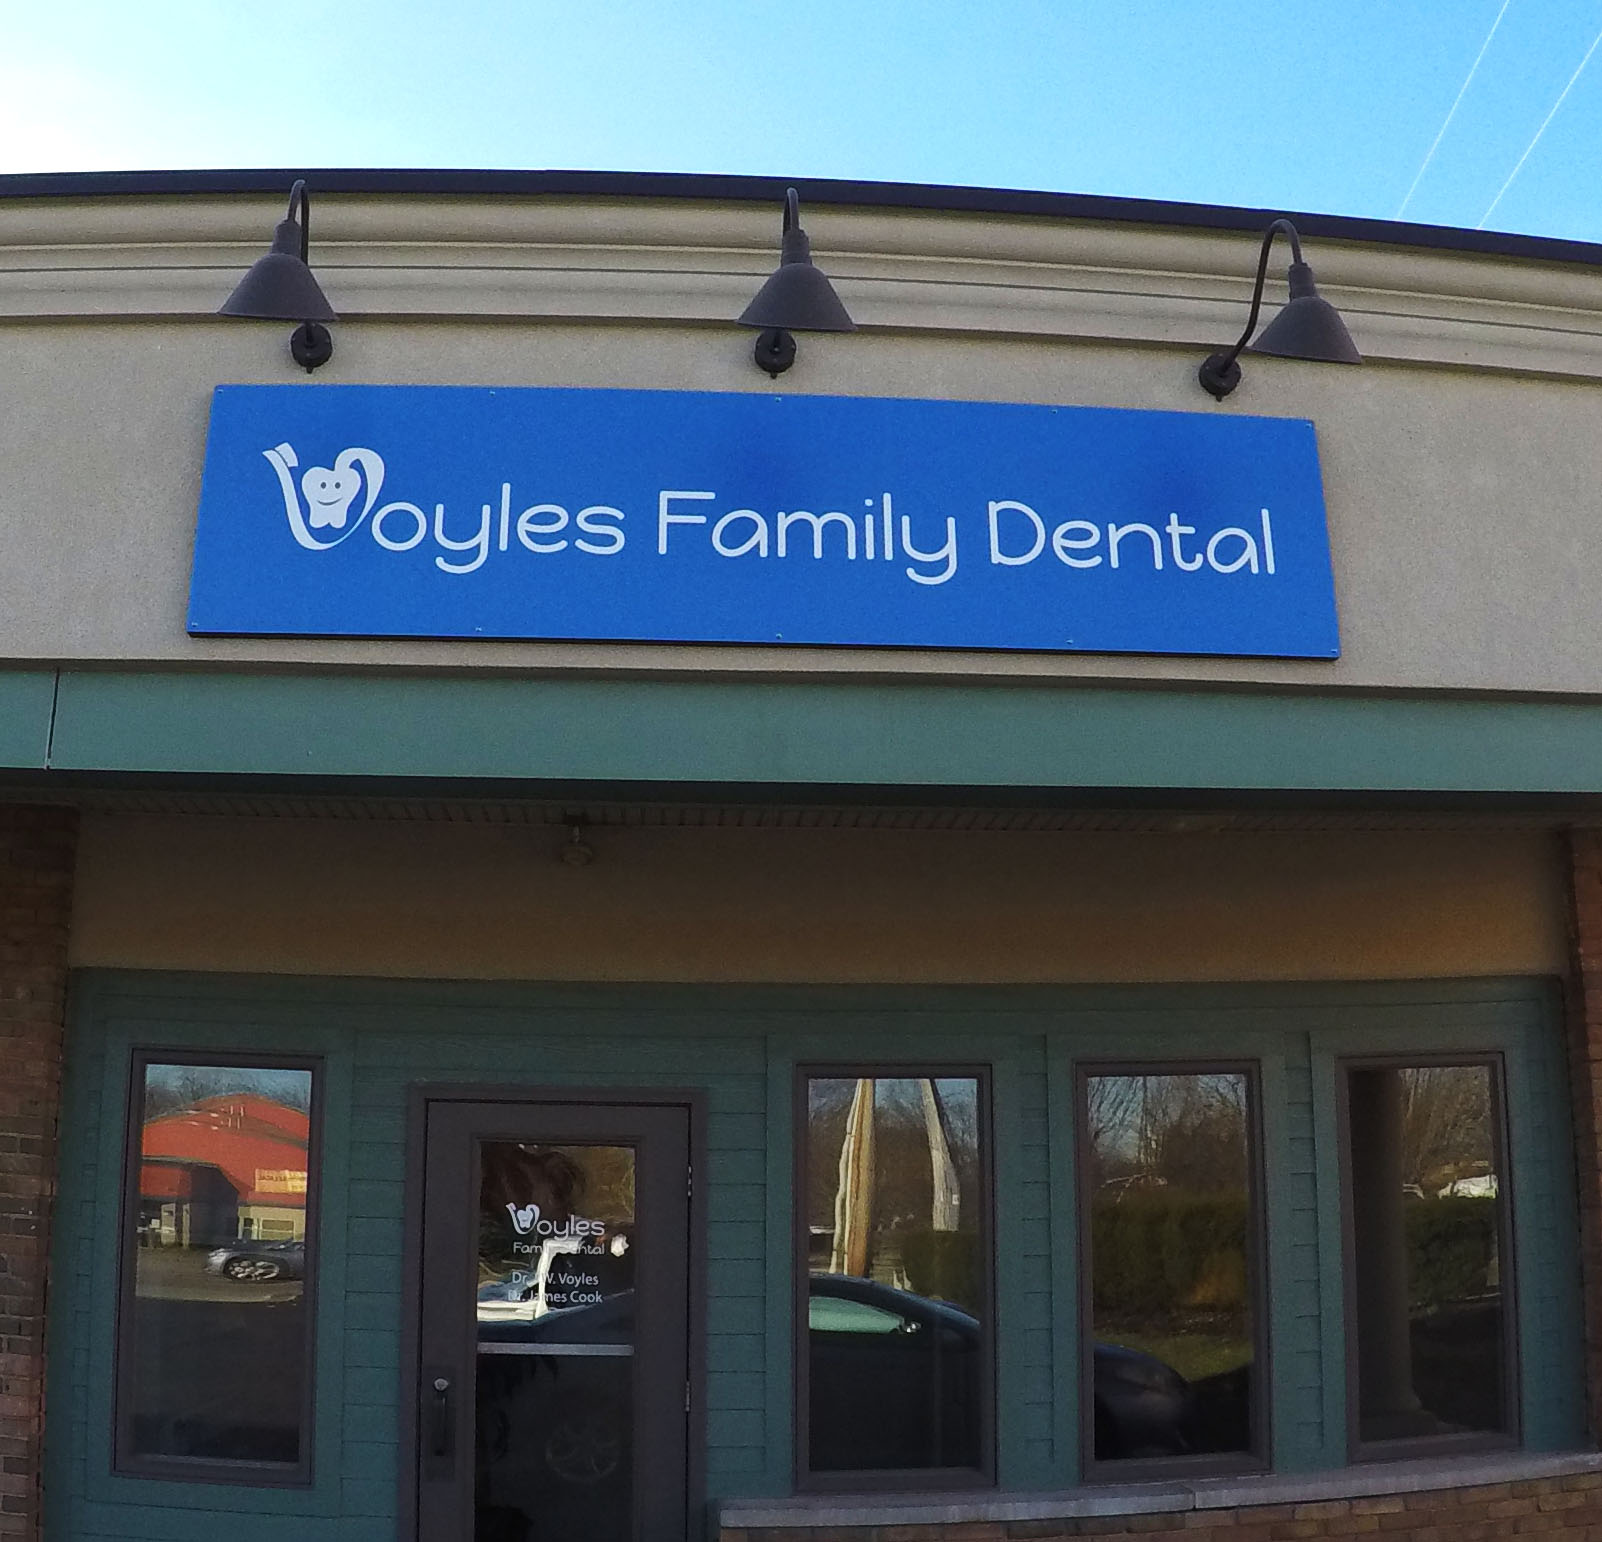 Voyles Family Dental